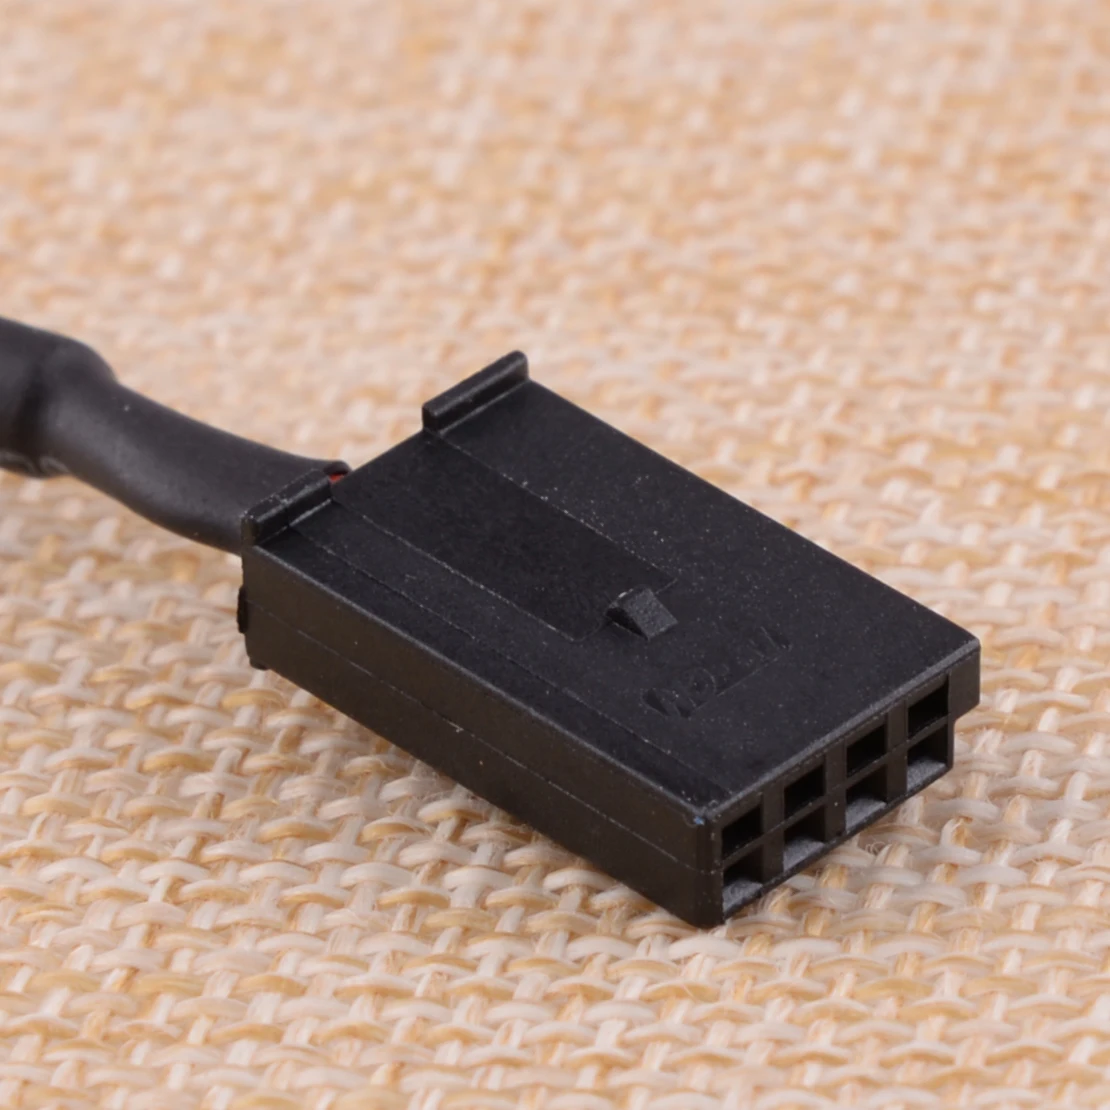 CITALL автомобильный черный USB вспомогательный переключатель разъем жгута проводов кабеля адаптера Комплект серебристый и черный пригодный для электронной сигареты Mini Cooper R50 R52 R53 2001 2002 2003 2004 2005 2006